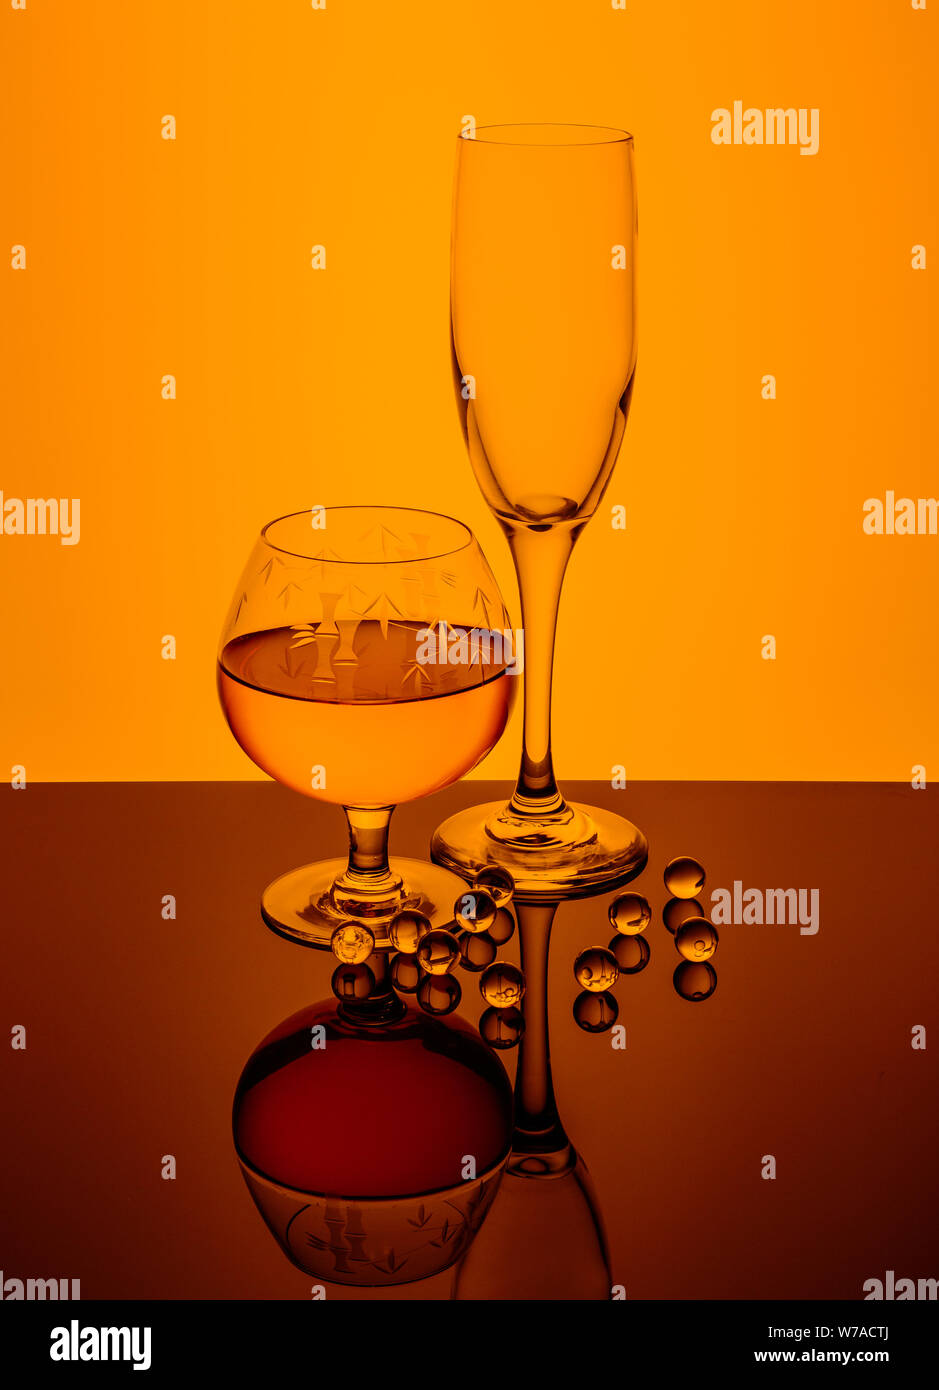 Aquí está una copa de brandy, vacía de champagne y cristal sumergidos en los mármoles de color naranja. Foto de stock